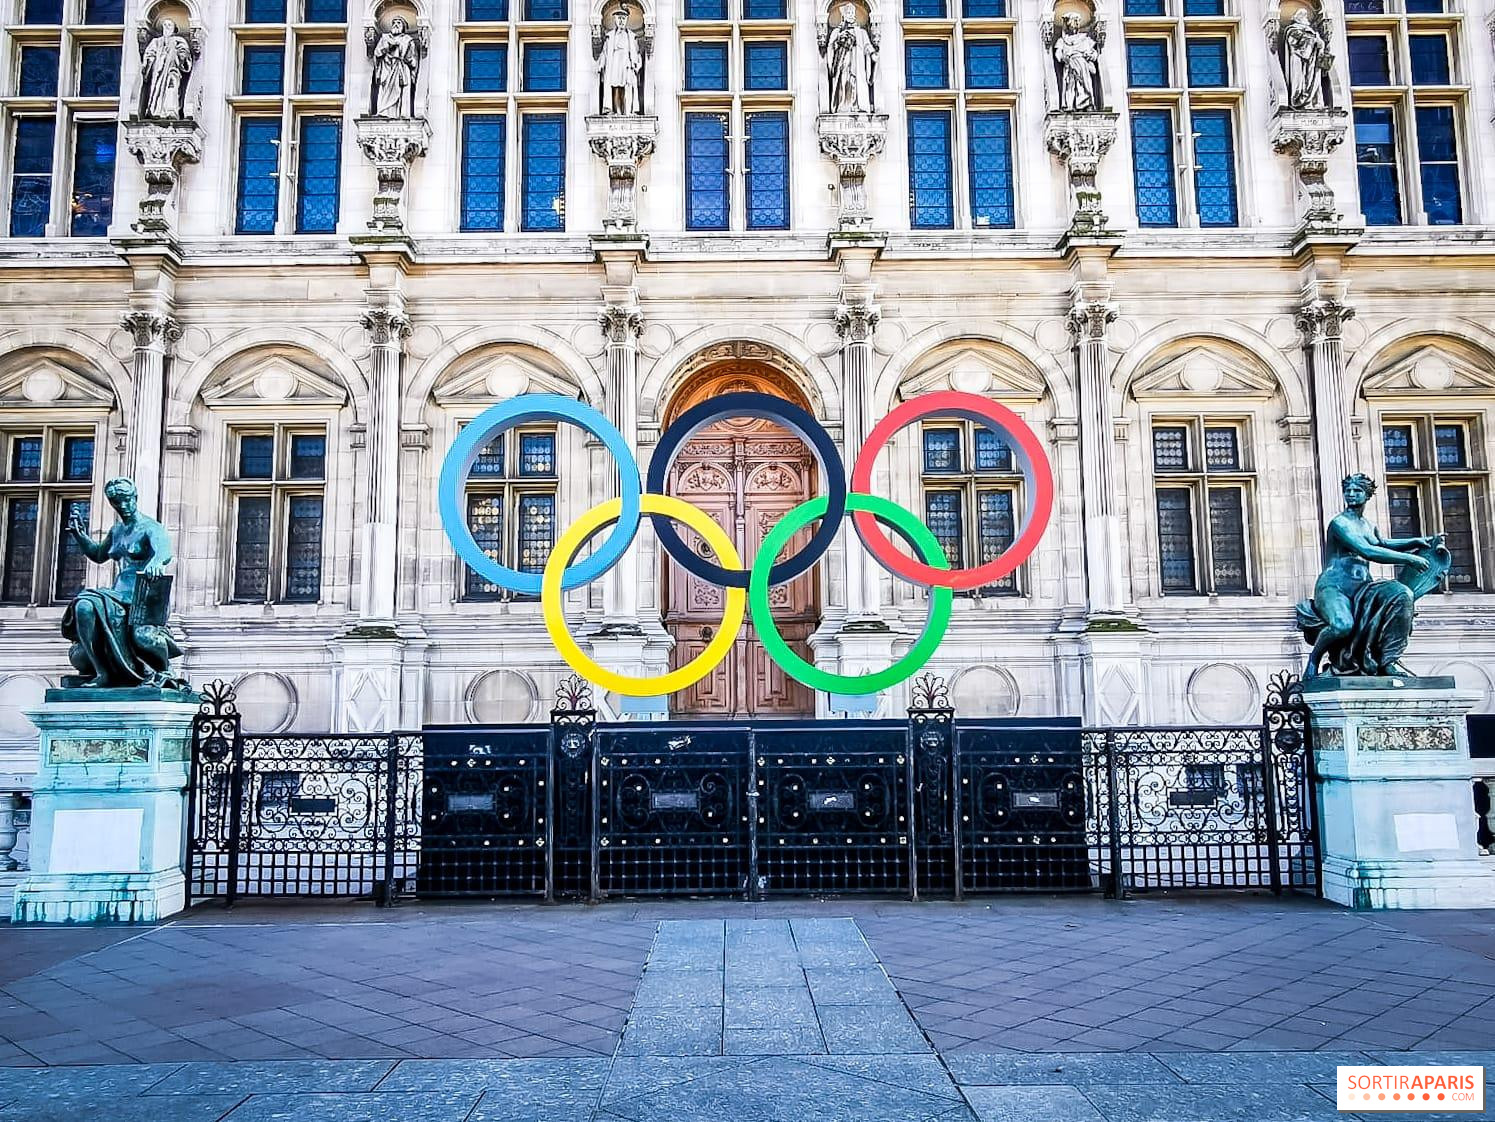 Paris organisera bien les Jeux olympiques de 2024 !